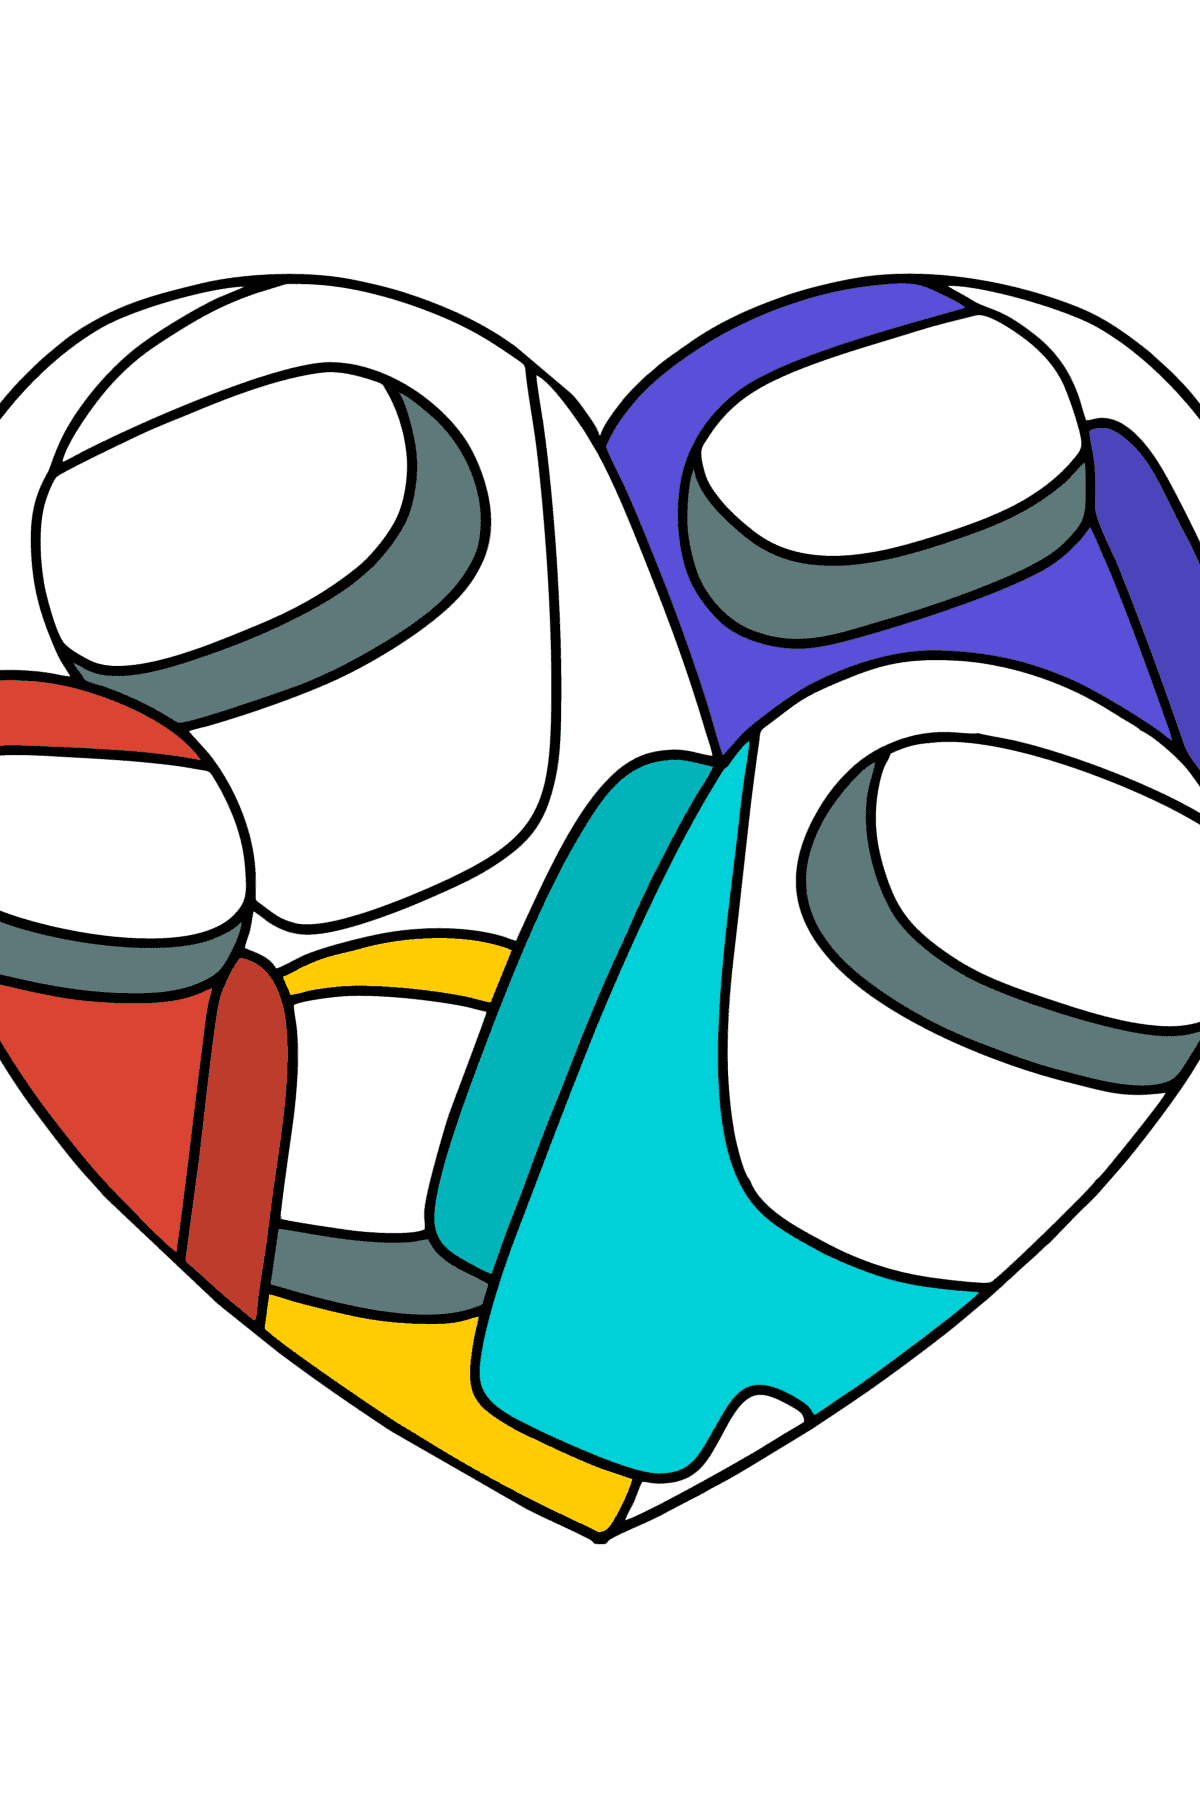 Disegno da colorare cuore con gli eroi di Among As - Disegni da colorare per bambini